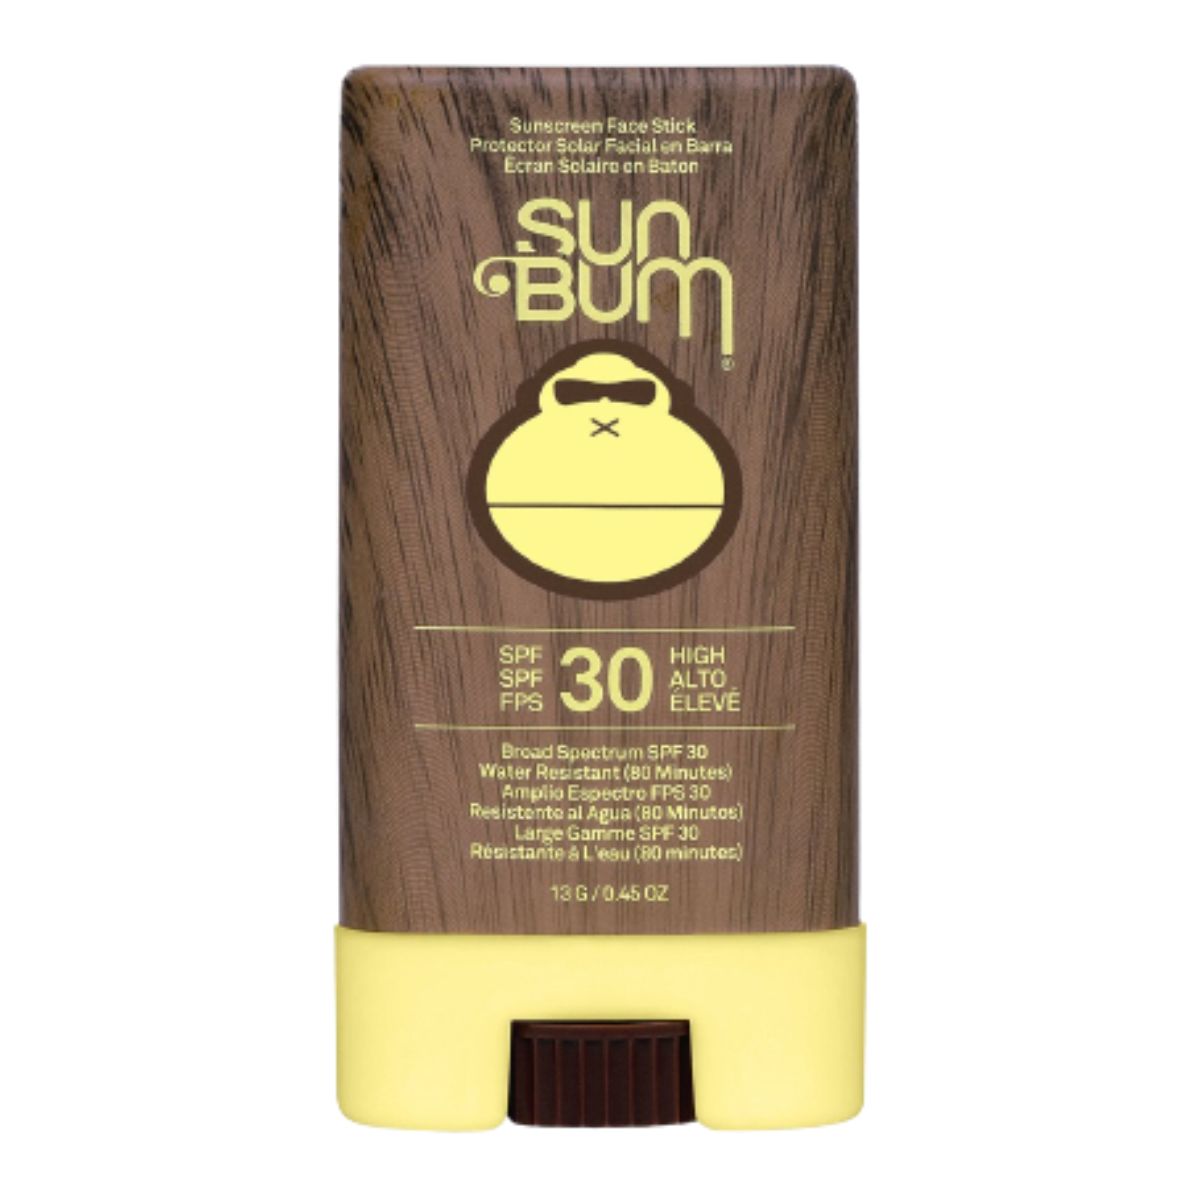 Sun Bum Original SPF 30 Face Stick